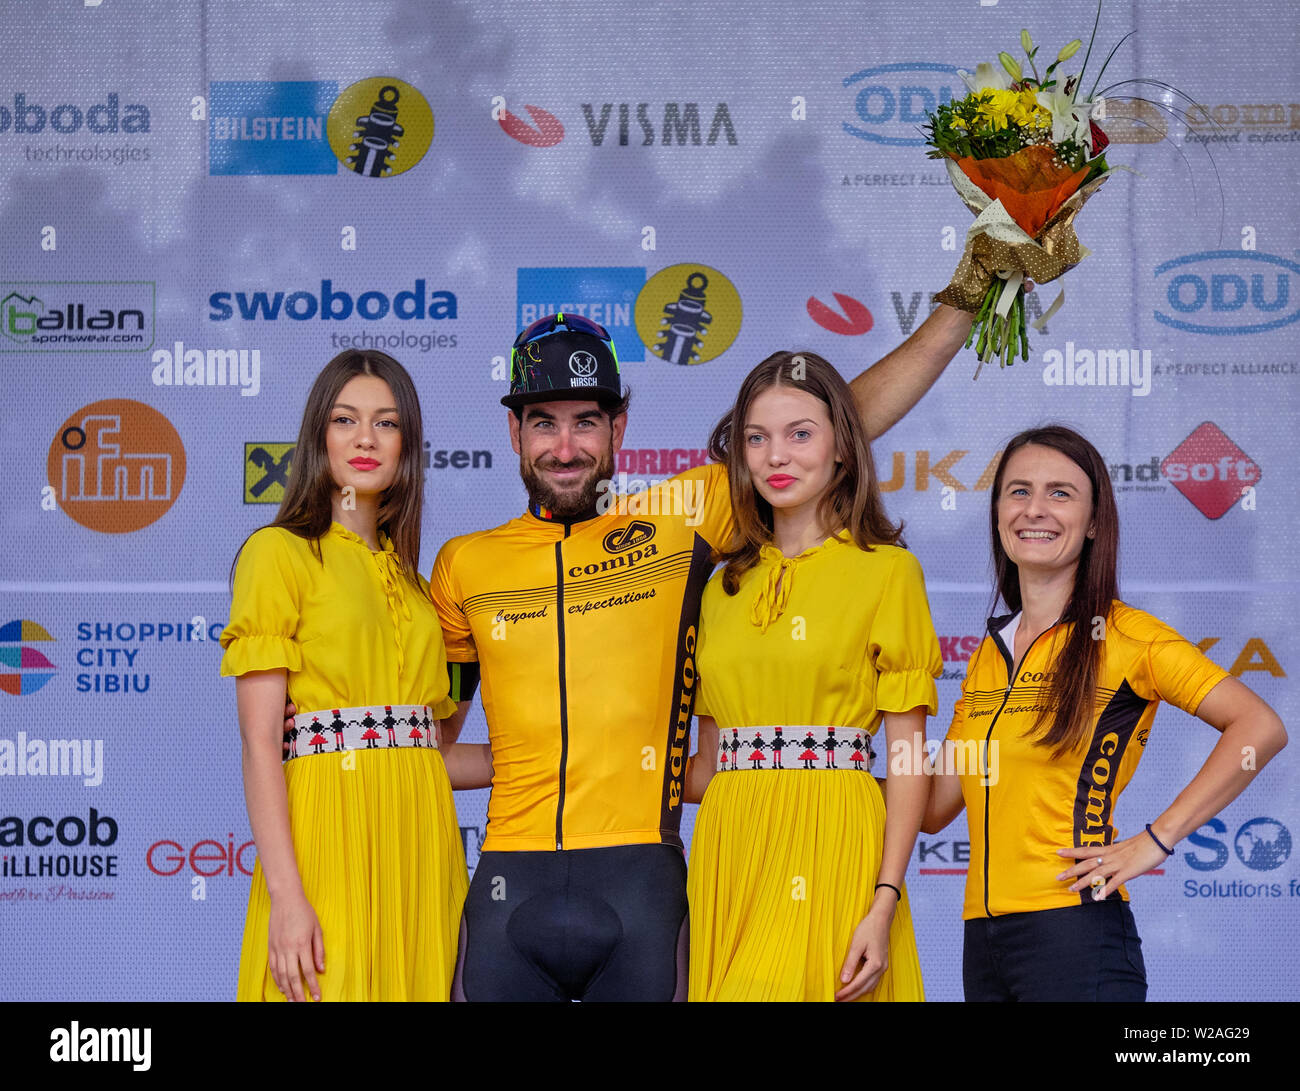 Preisverleihung der Radfahrer Riccardo Stacchiotti (Team Giotti Victoria-Palomar) Sieger der 4. Phase der Radtour Sibiu, Rumänien, Juli 7,2019 Stockfoto